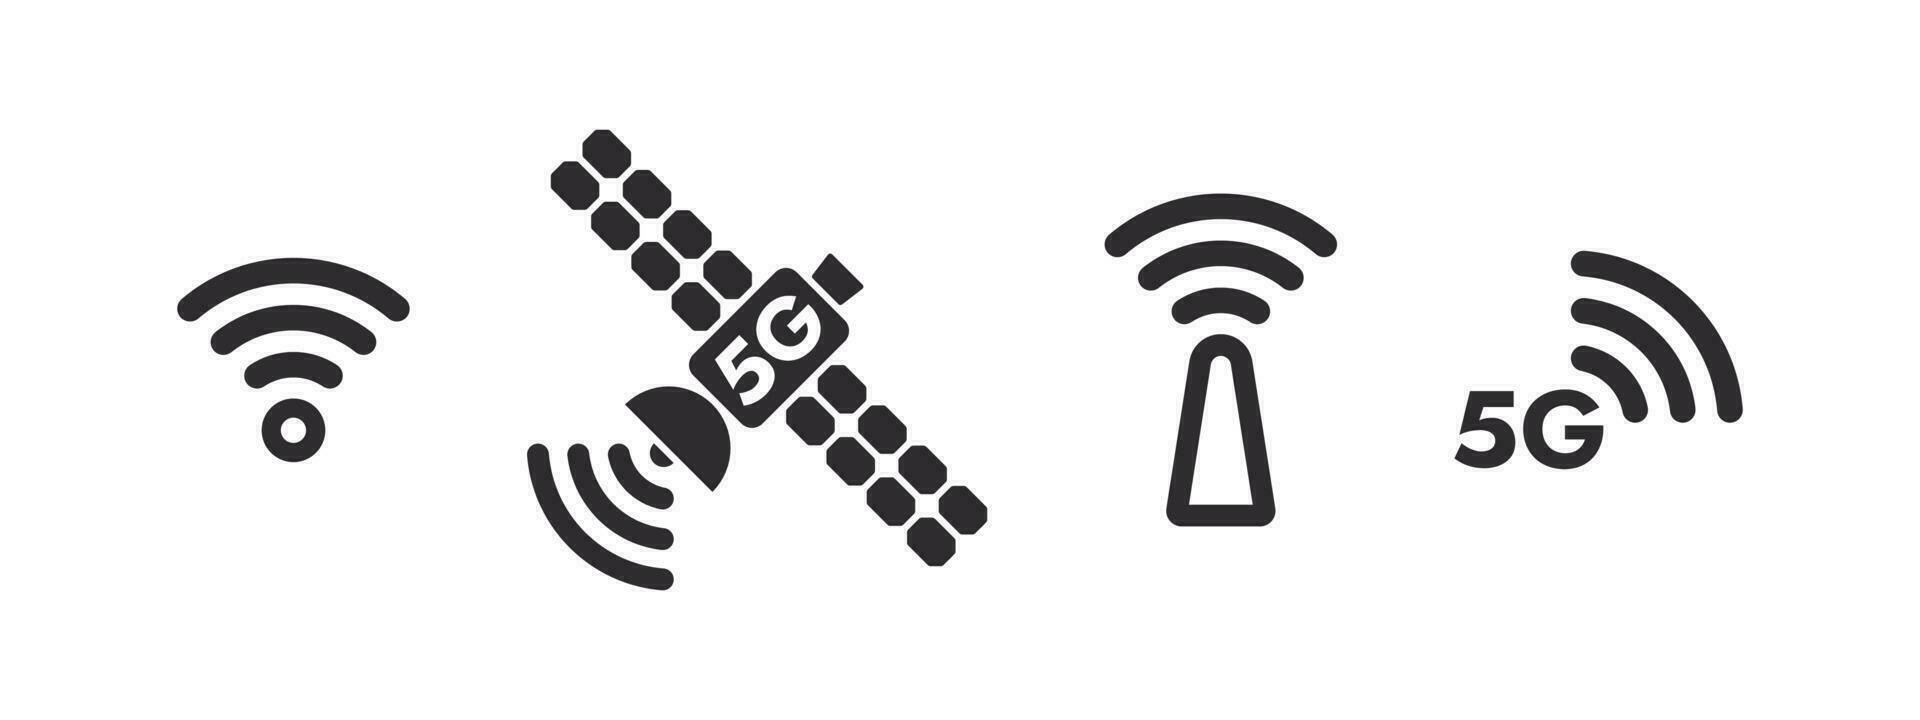 satélite iconos 5g satélite Internet. 5g inalámbrico web. inalámbrico conectividad. vector escalable gráficos